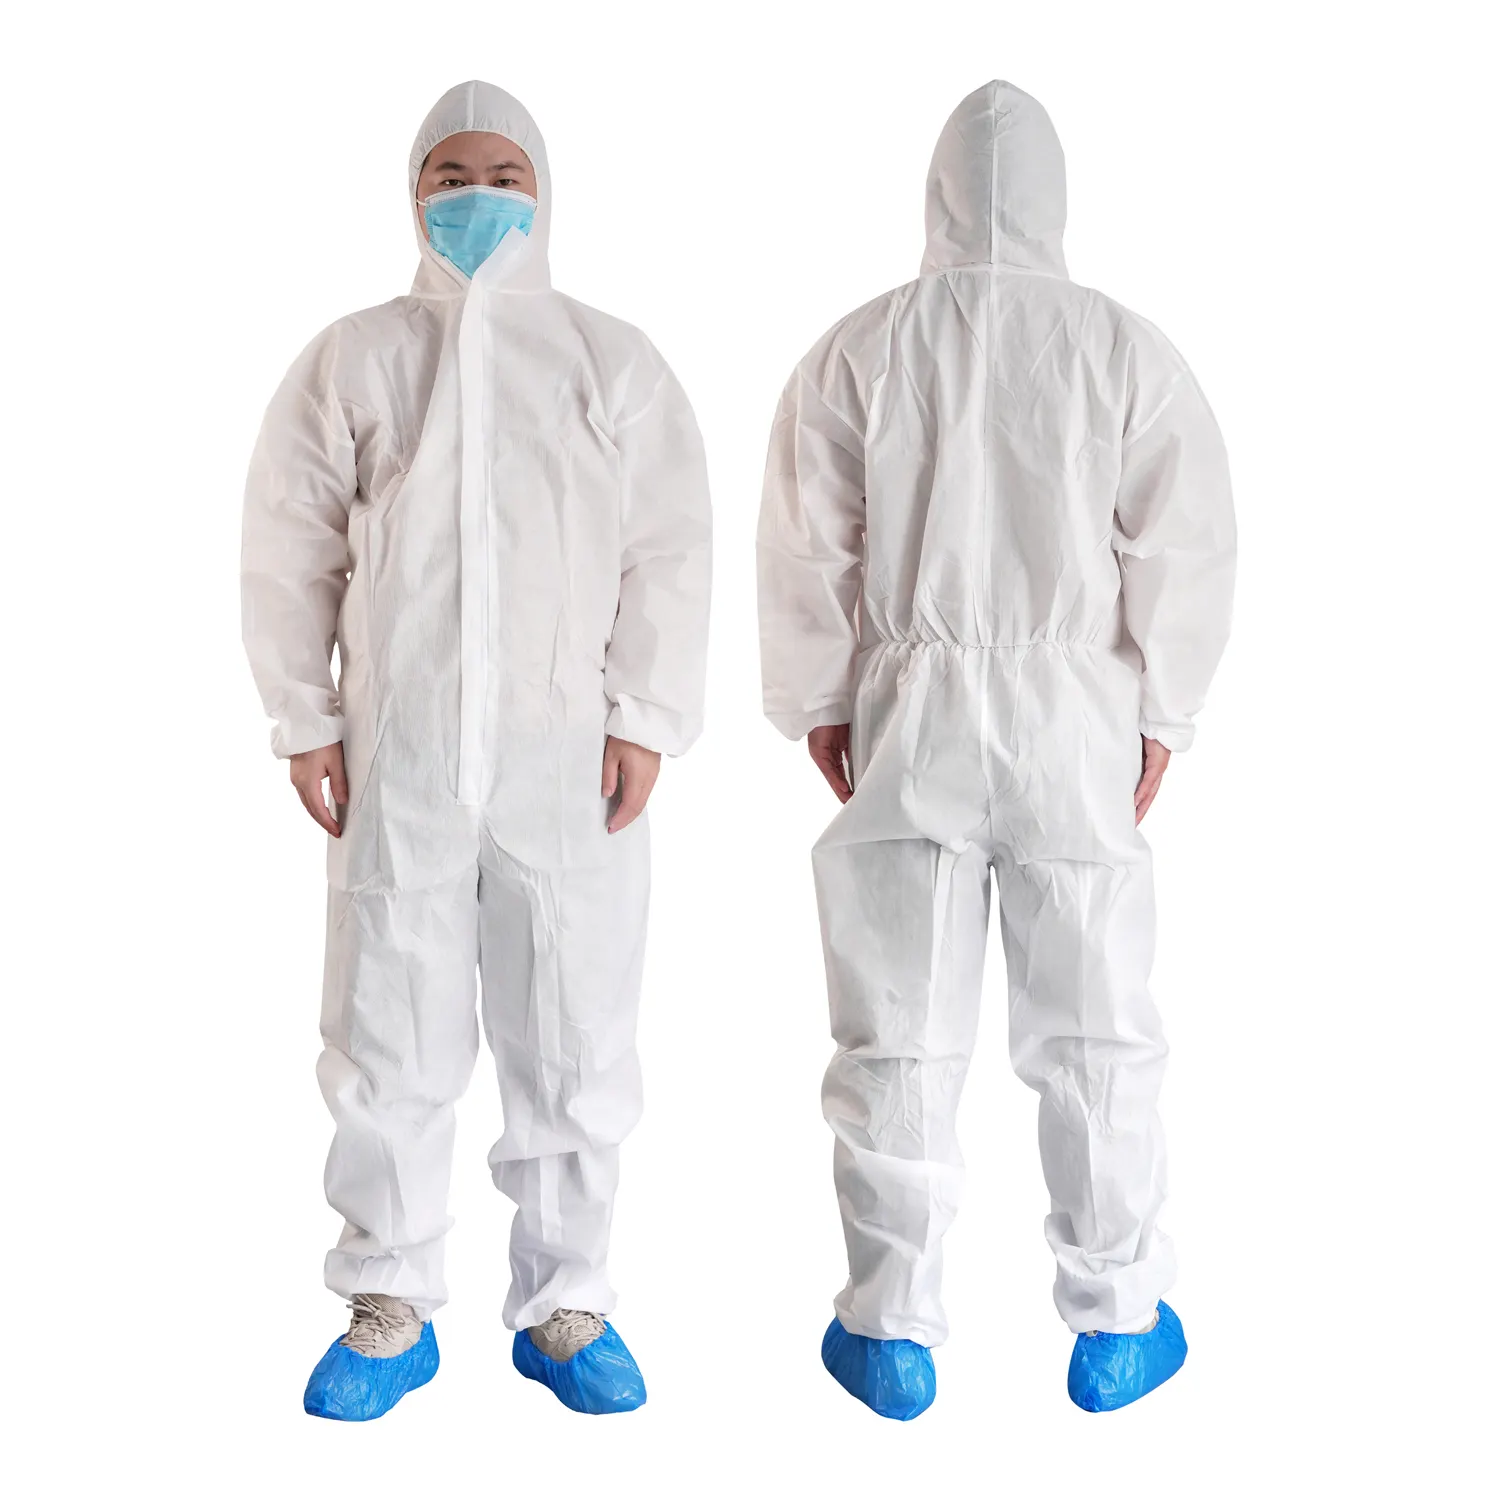 Нетканая защитная одежда для больниц, дешевые комбинезоны по заводской цене